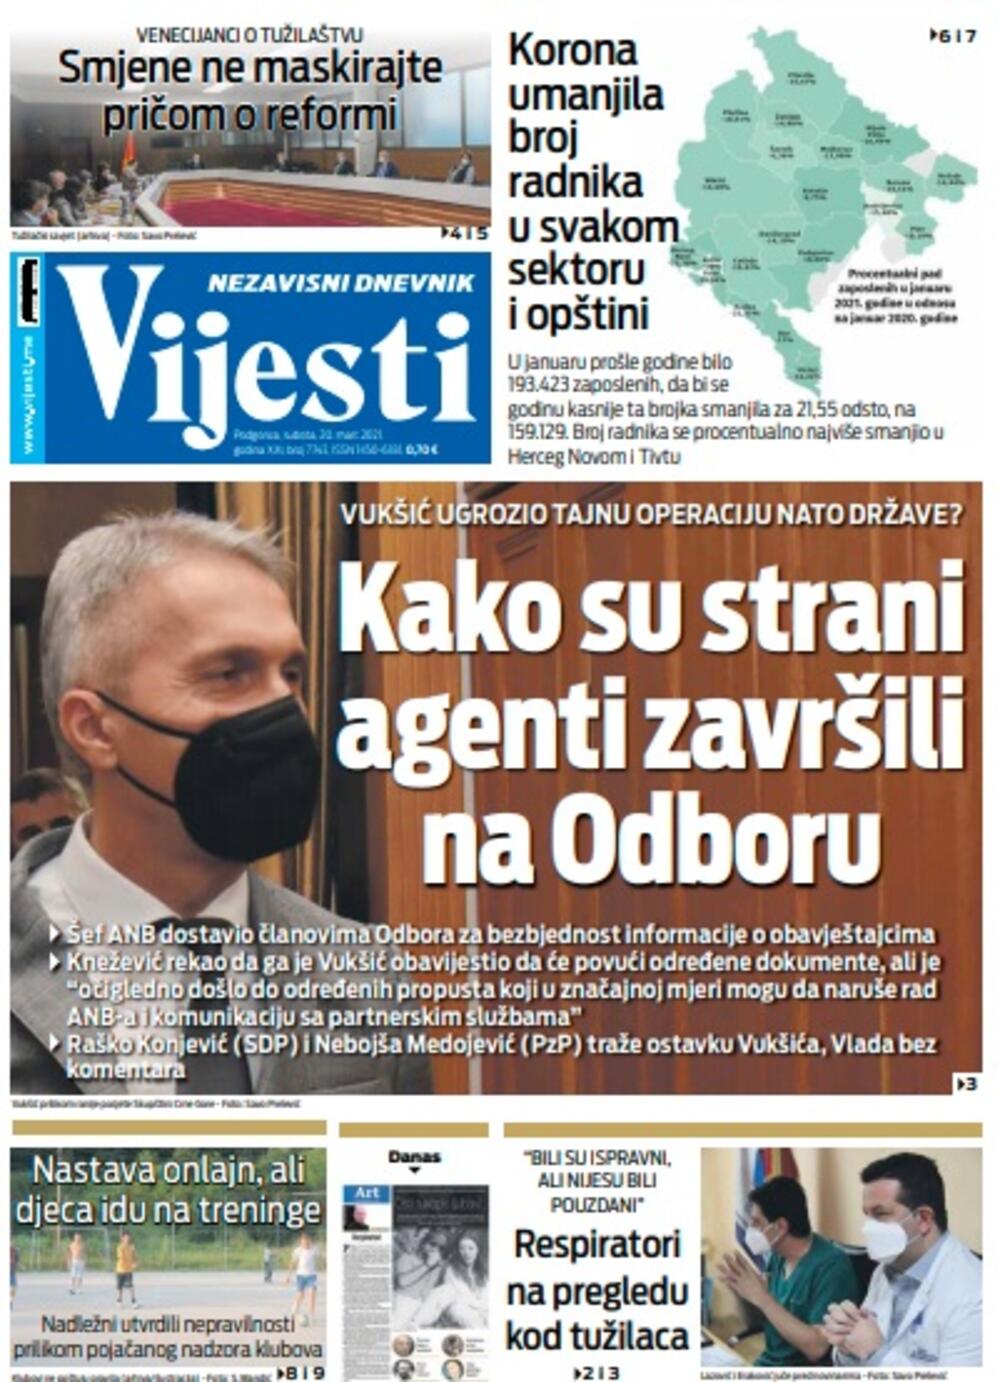 Naslovna strana "Vijesti" za subotu 20. mart 2021. godine, Foto: Vijesti